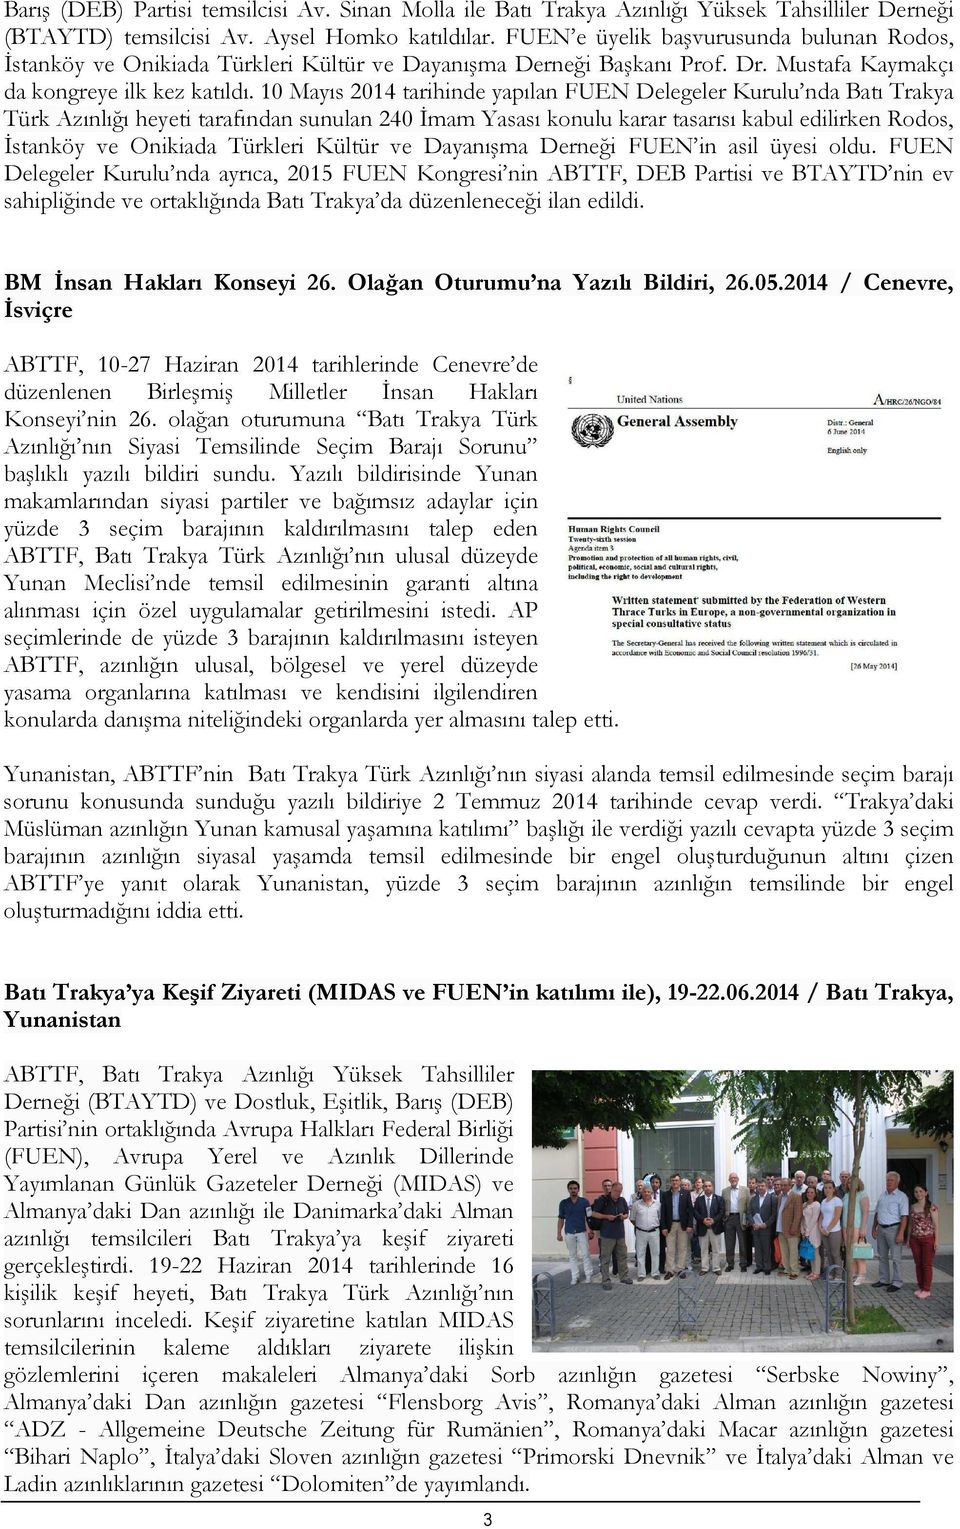 10 Mayıs 2014 tarihinde yapılan FUEN Delegeler Kurulu nda Batı Trakya Türk Azınlığı heyeti tarafından sunulan 240 Đmam Yasası konulu karar tasarısı kabul edilirken Rodos, Đstanköy ve Onikiada